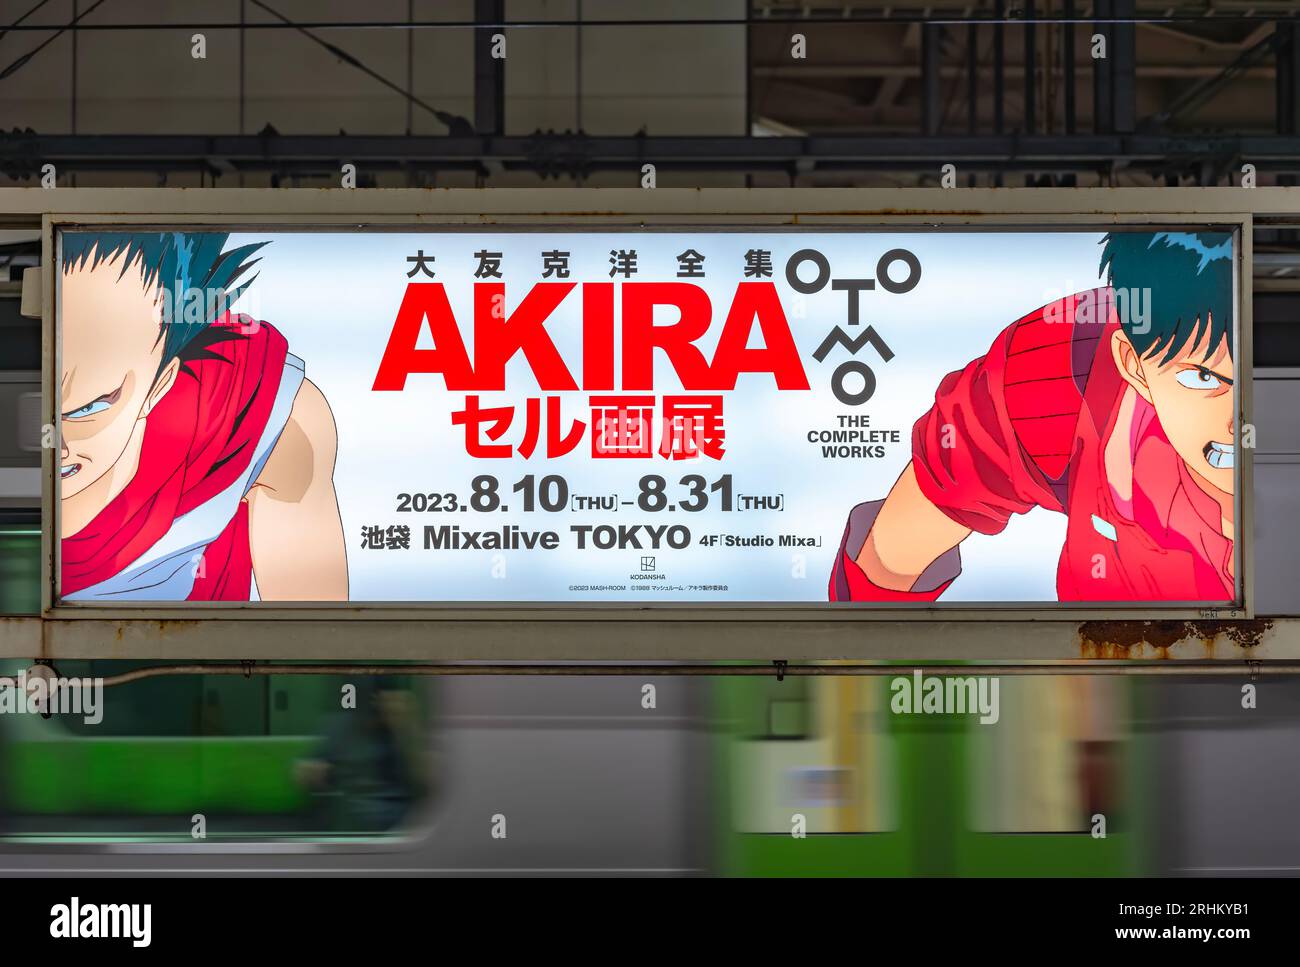 tokyo, akihabara - 11 agosto 2023: Insegne al neon che illuminano un'illustrazione celluloide di Tetsuo e Kaneda dall'anime e manga giapponese Akira Foto Stock